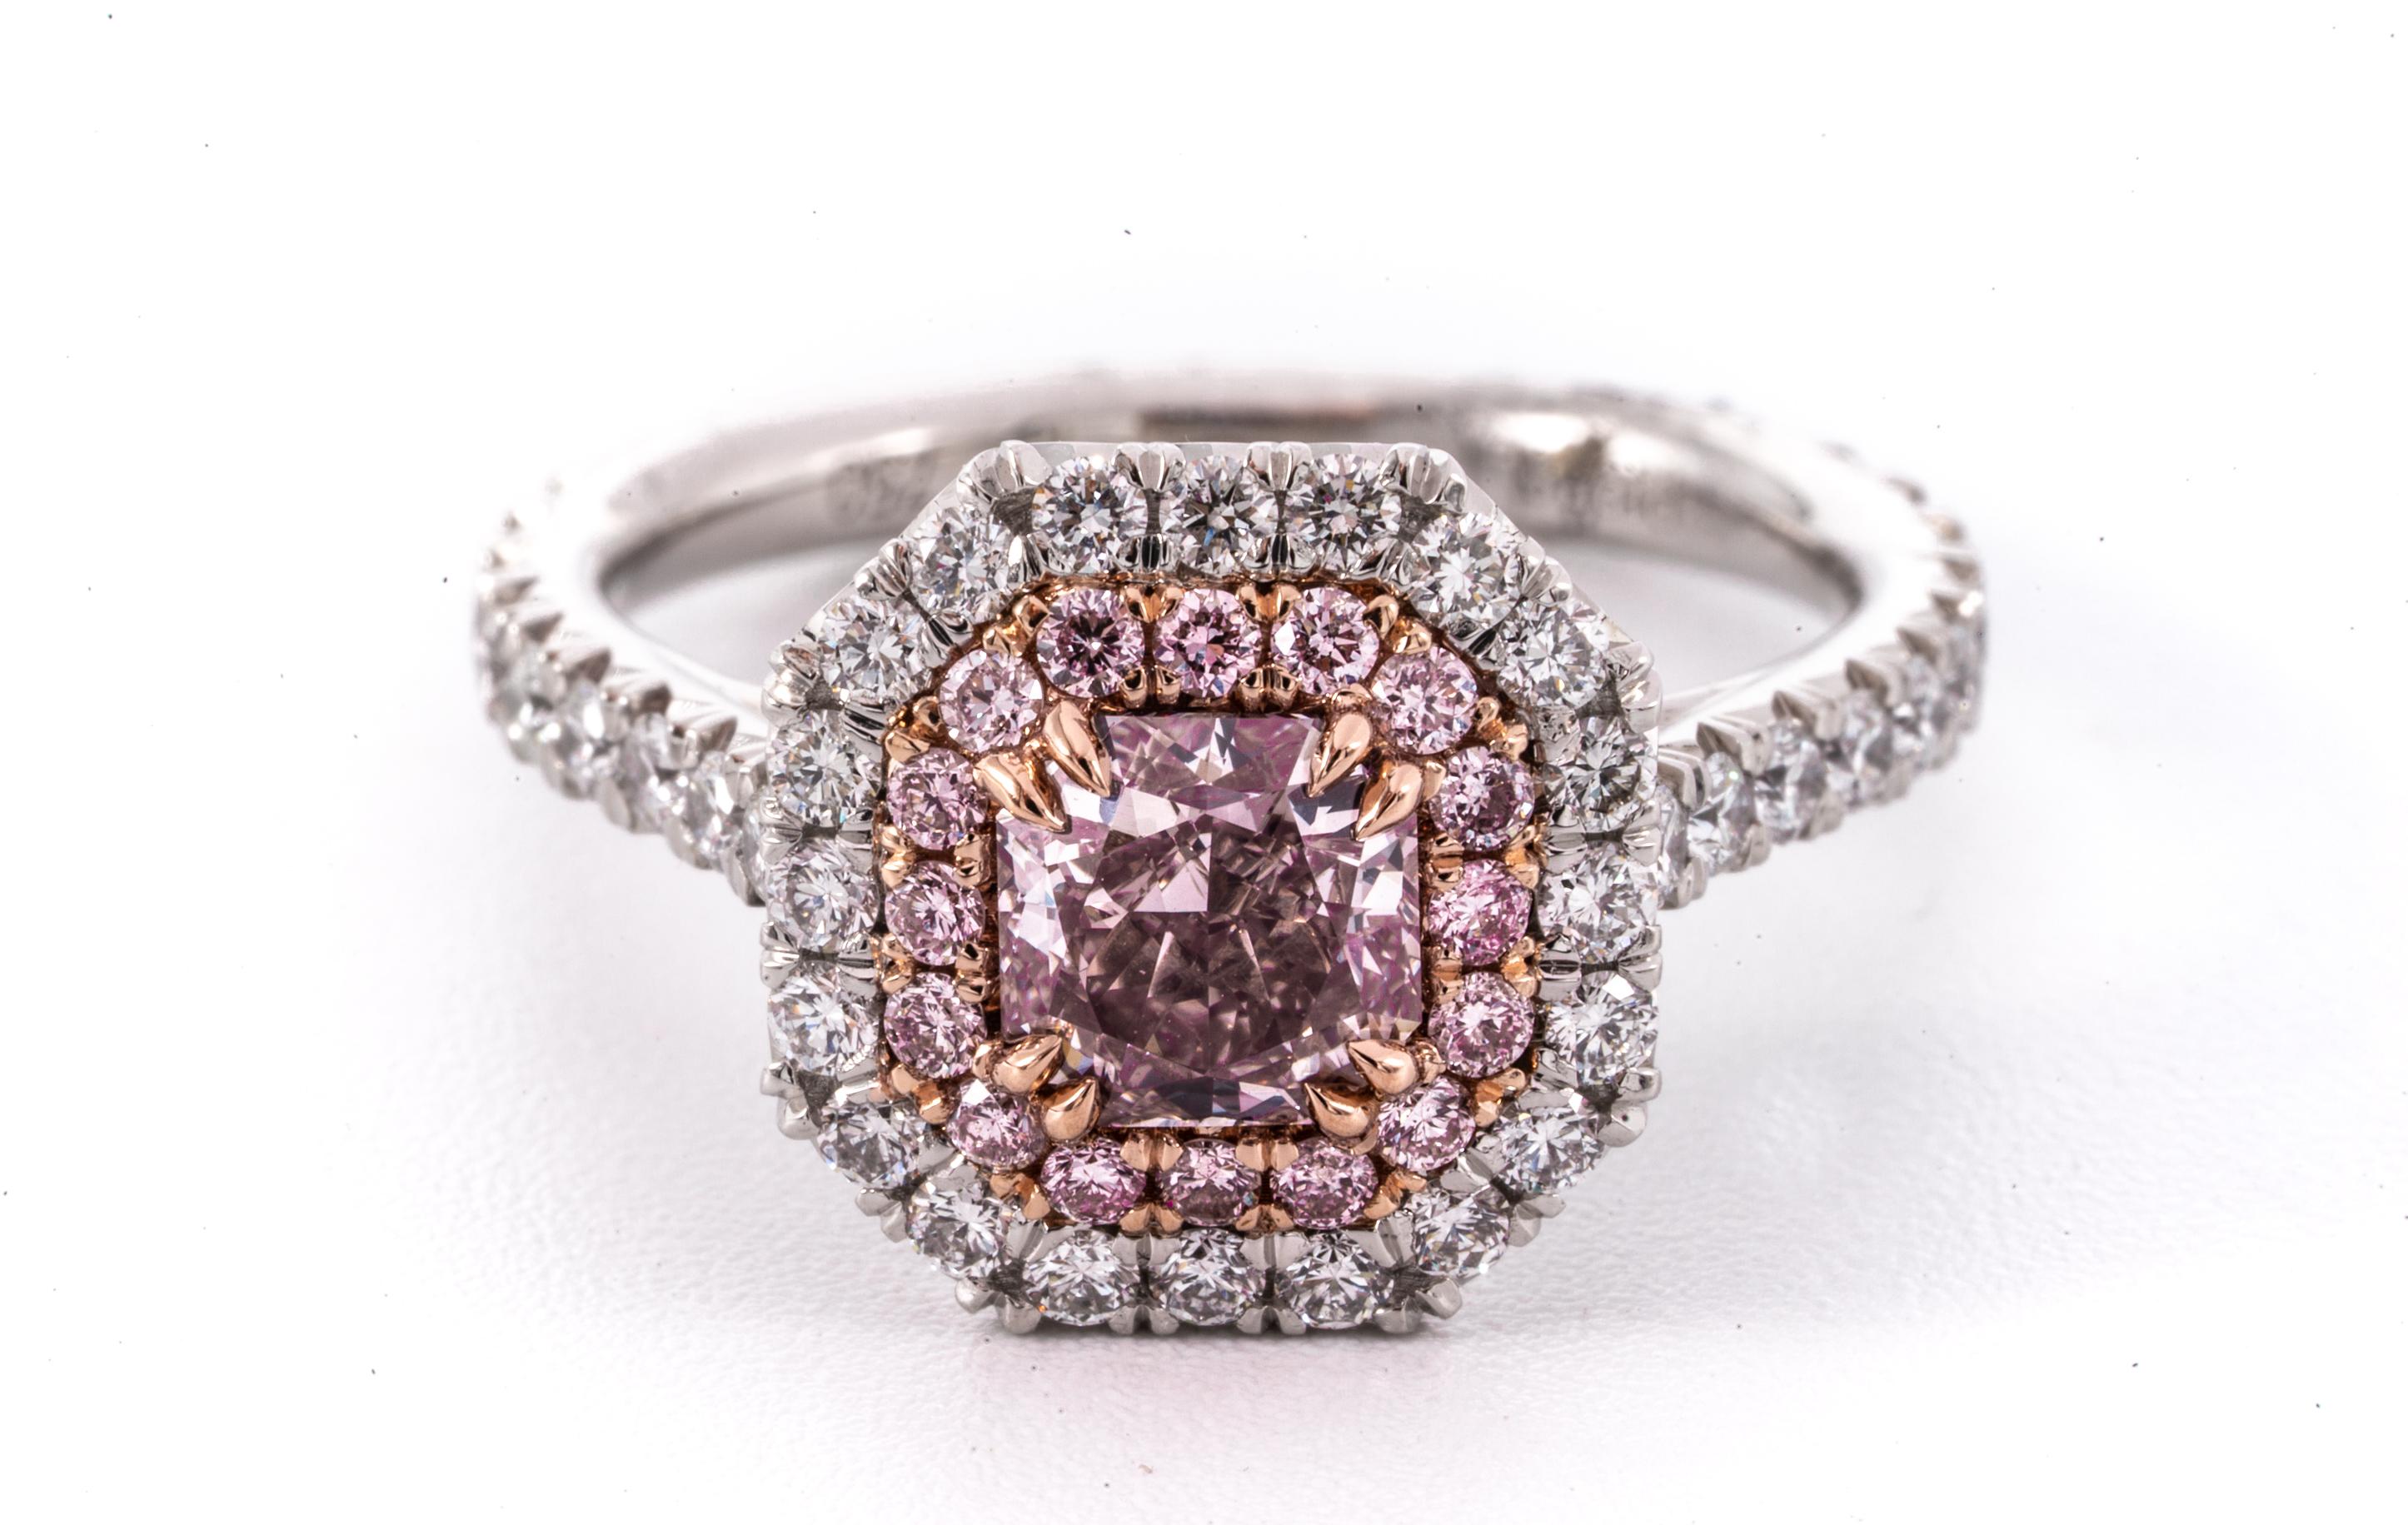 .91 Karat Fancy bräunlich rosa Diamantring mit Strahlenschliff, Reinheit VS2
GIA Grading Bericht enthalten ( # 1186855138 ) 
Ring ist hervorgehoben mit  16 natürliche rosafarbene Diamanten mit einem Gesamtgewicht von 0,21 Karat und 58 weiße